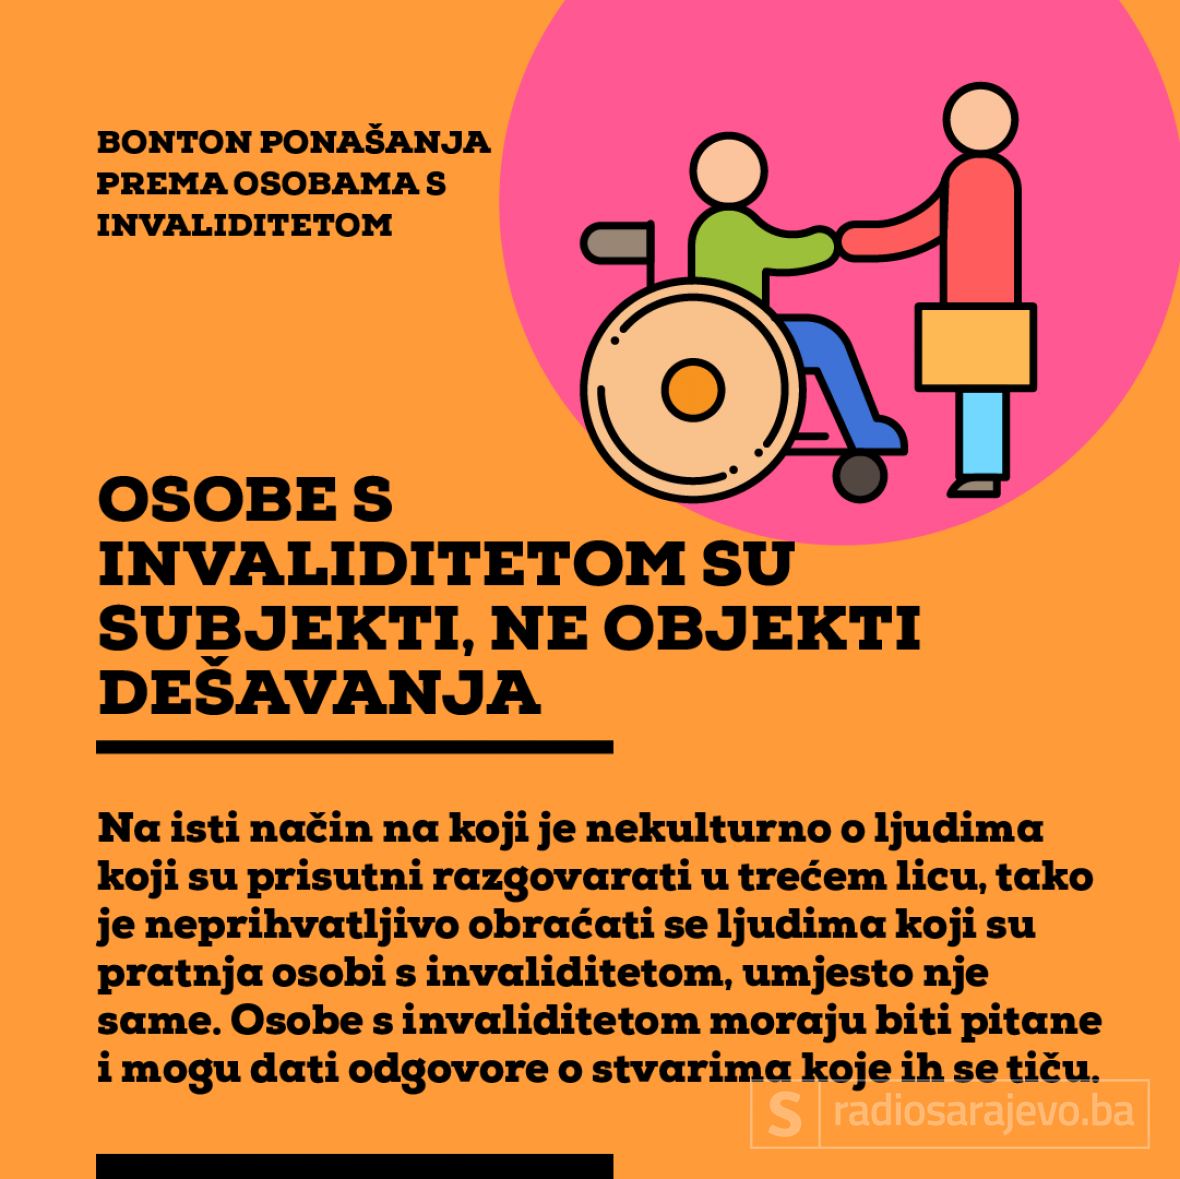 Ilustracija: Azra Kadić, Radiosarajevo.ba /BOnton ponašanja prema osobama s invalididtetom 